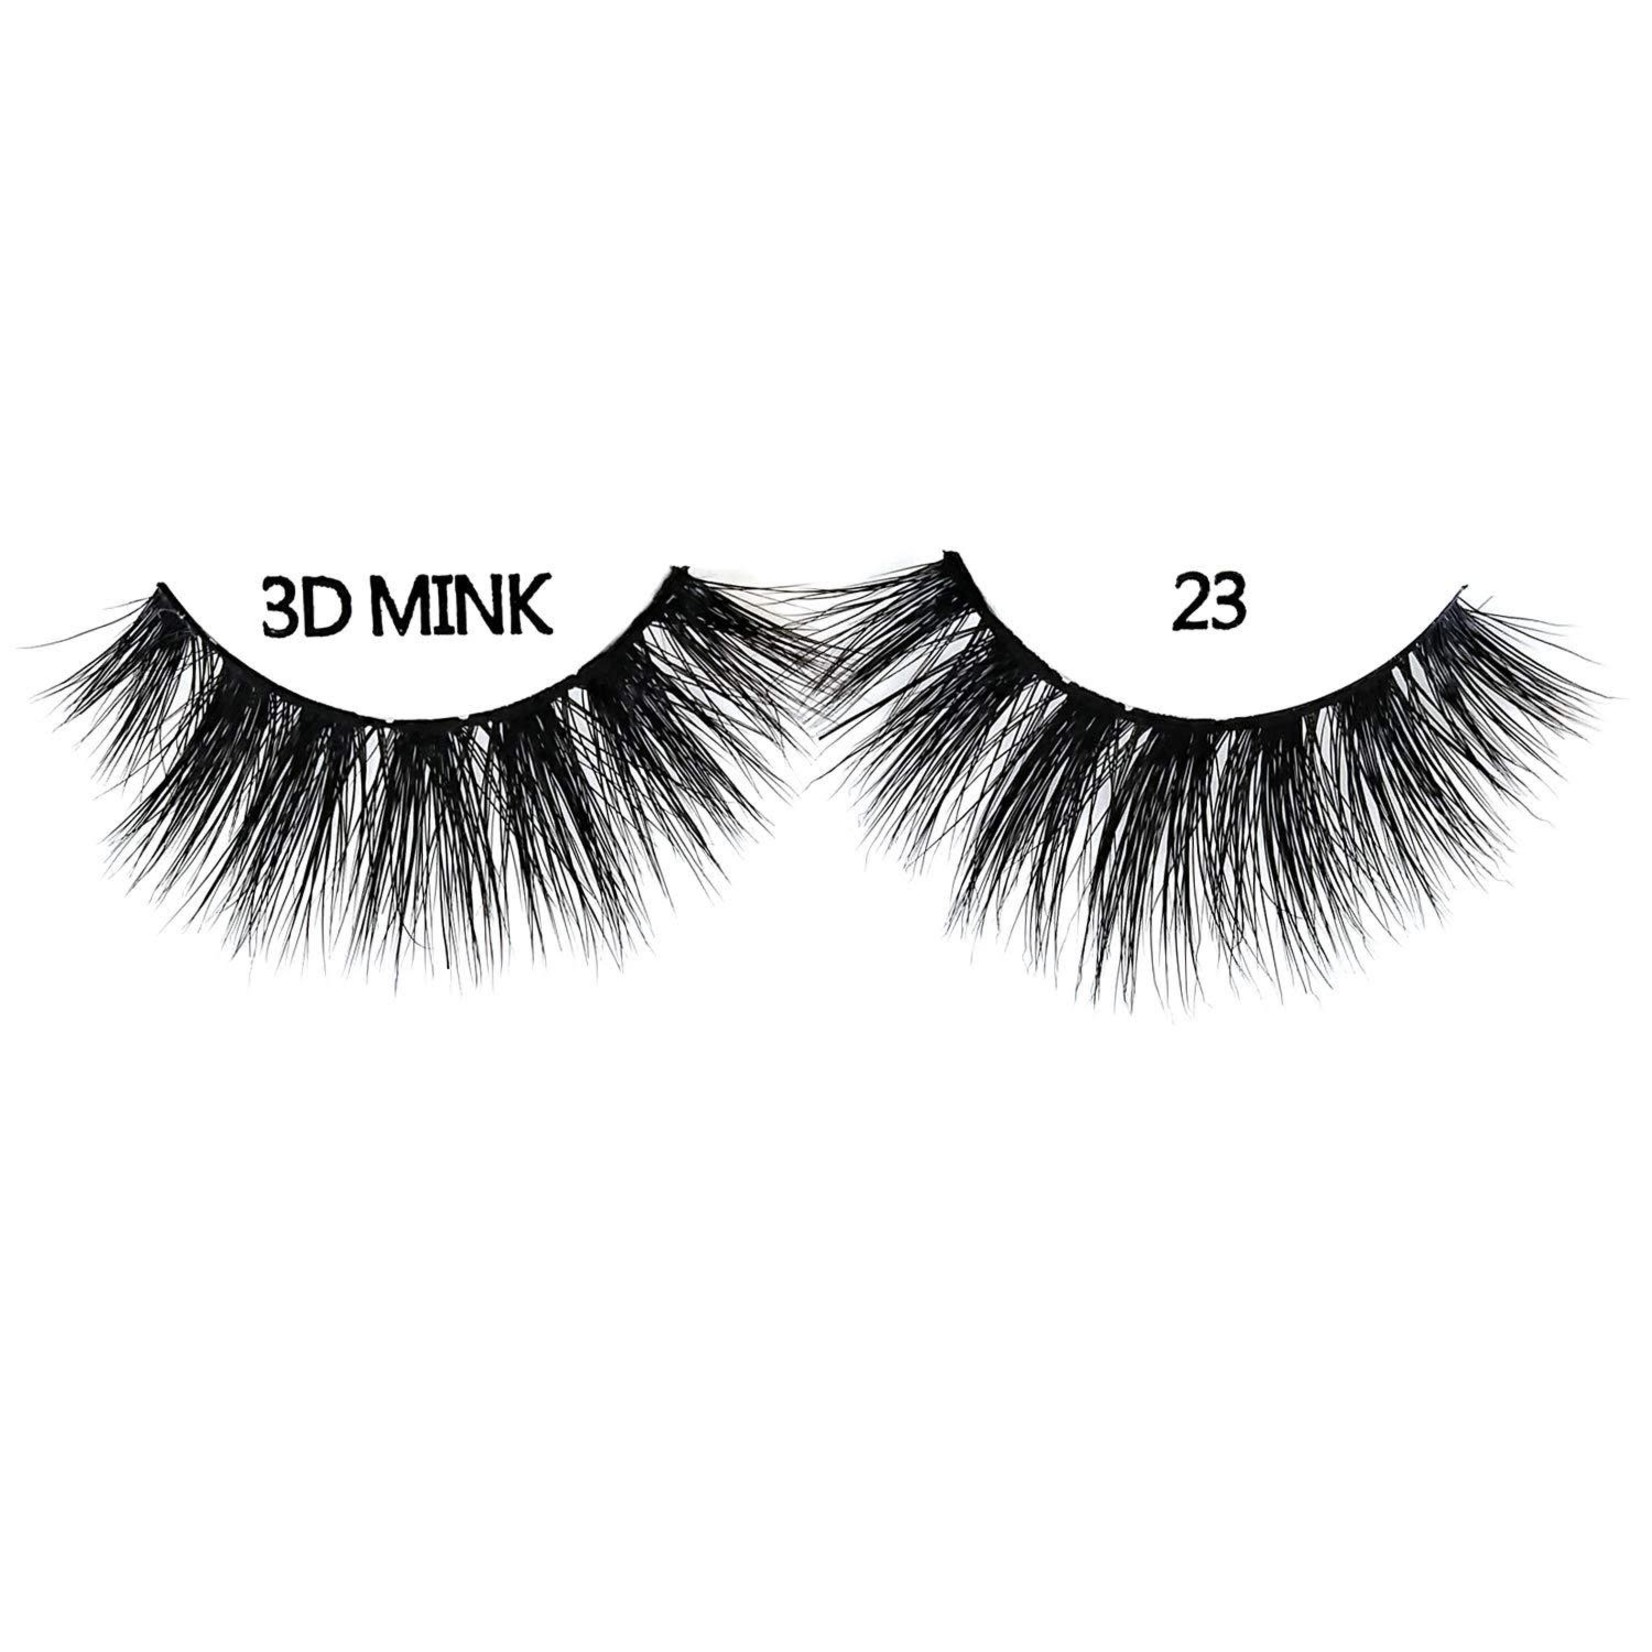 Miz Lash Mink 3D Eyelash